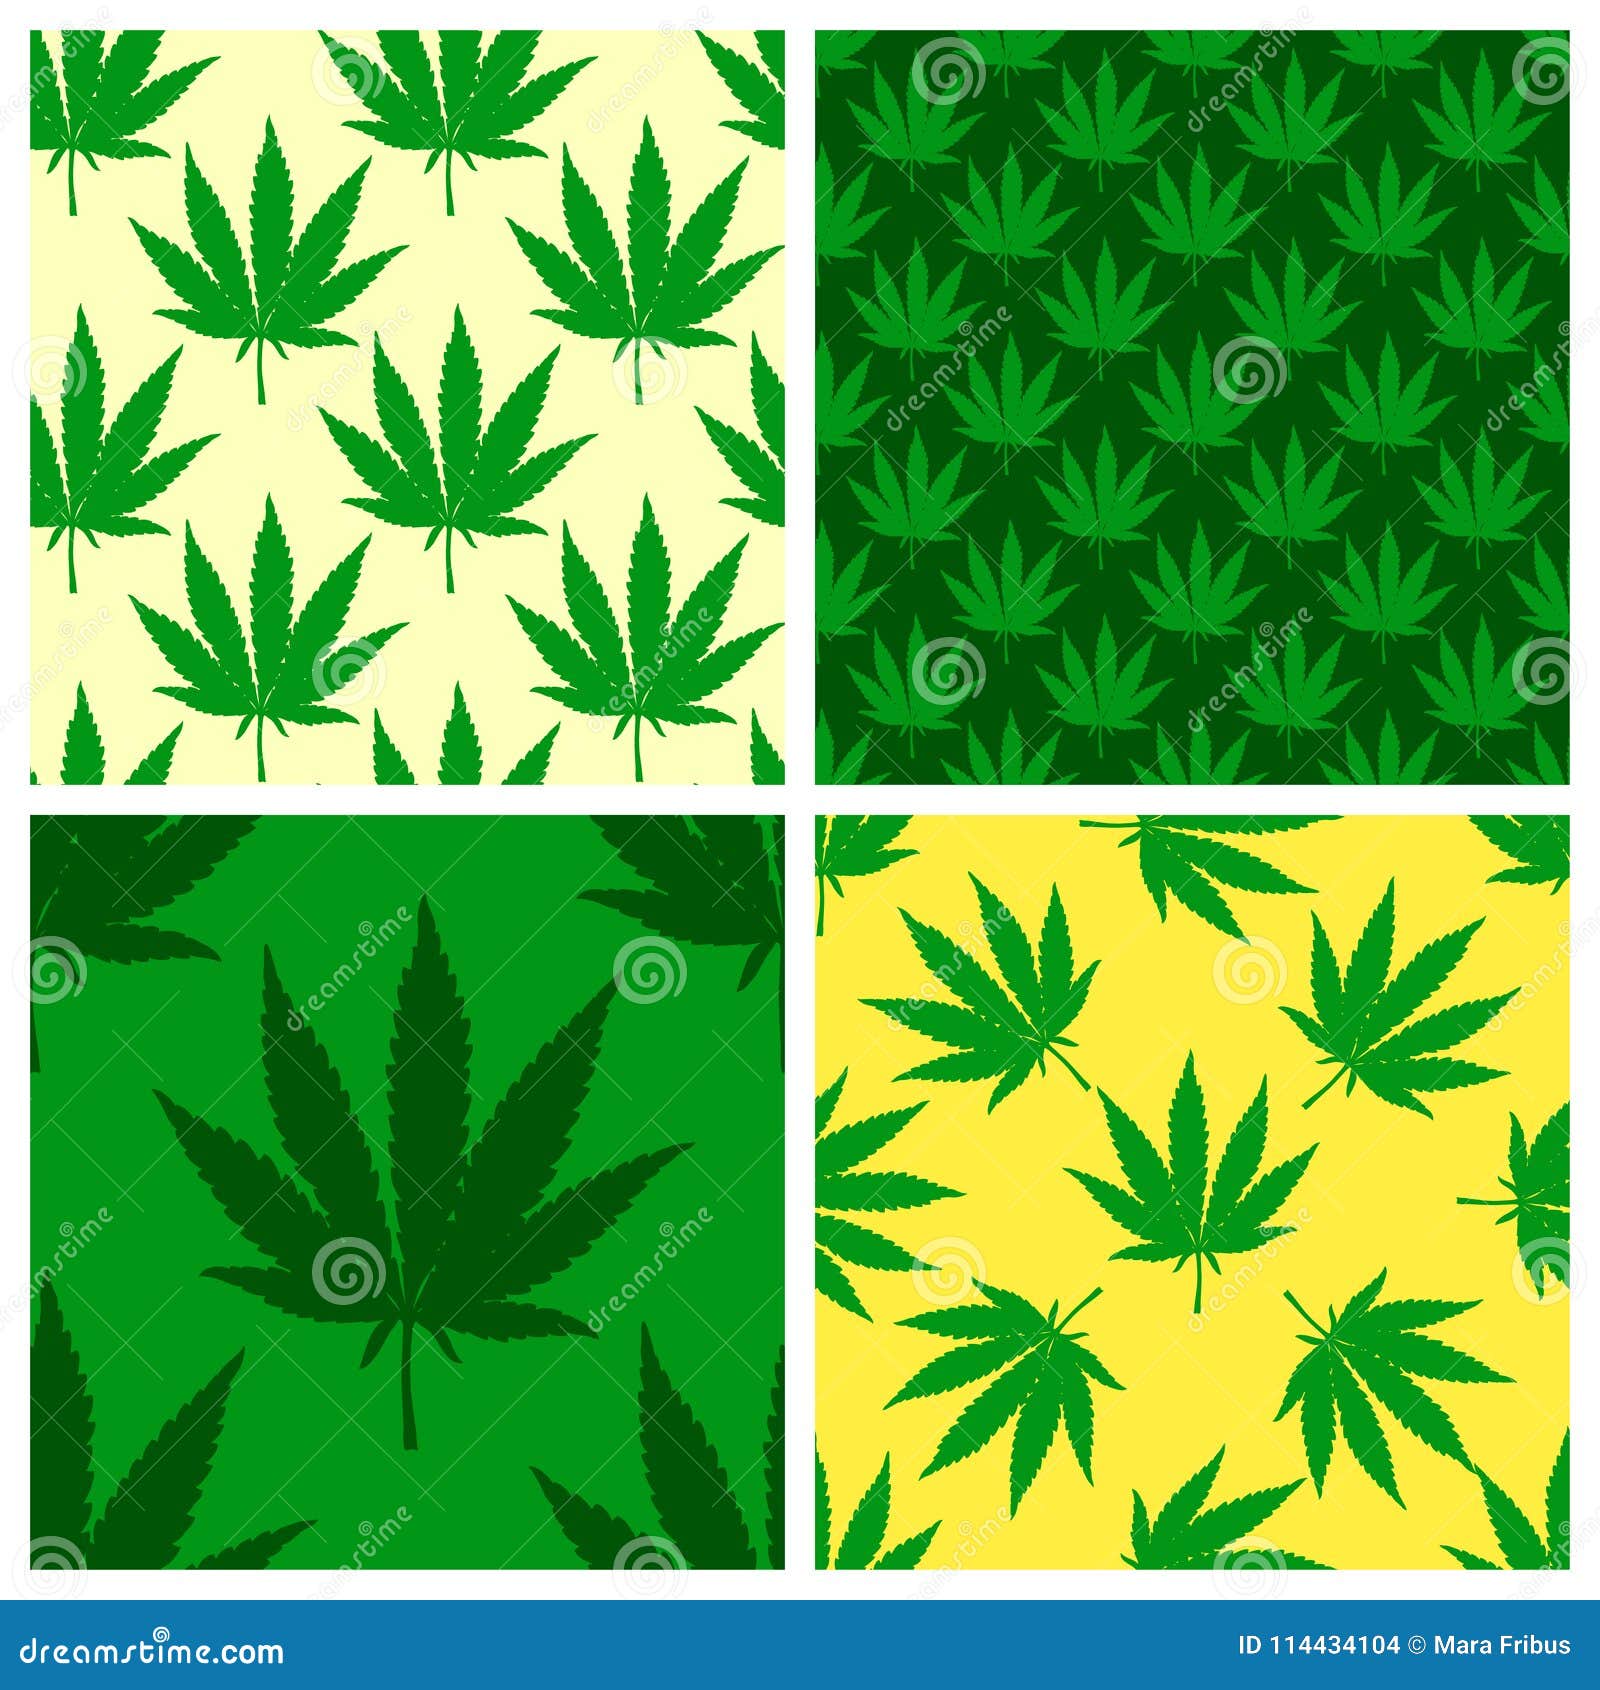 Нарисованные картинки марихуаны наказание за ношение марихуаны